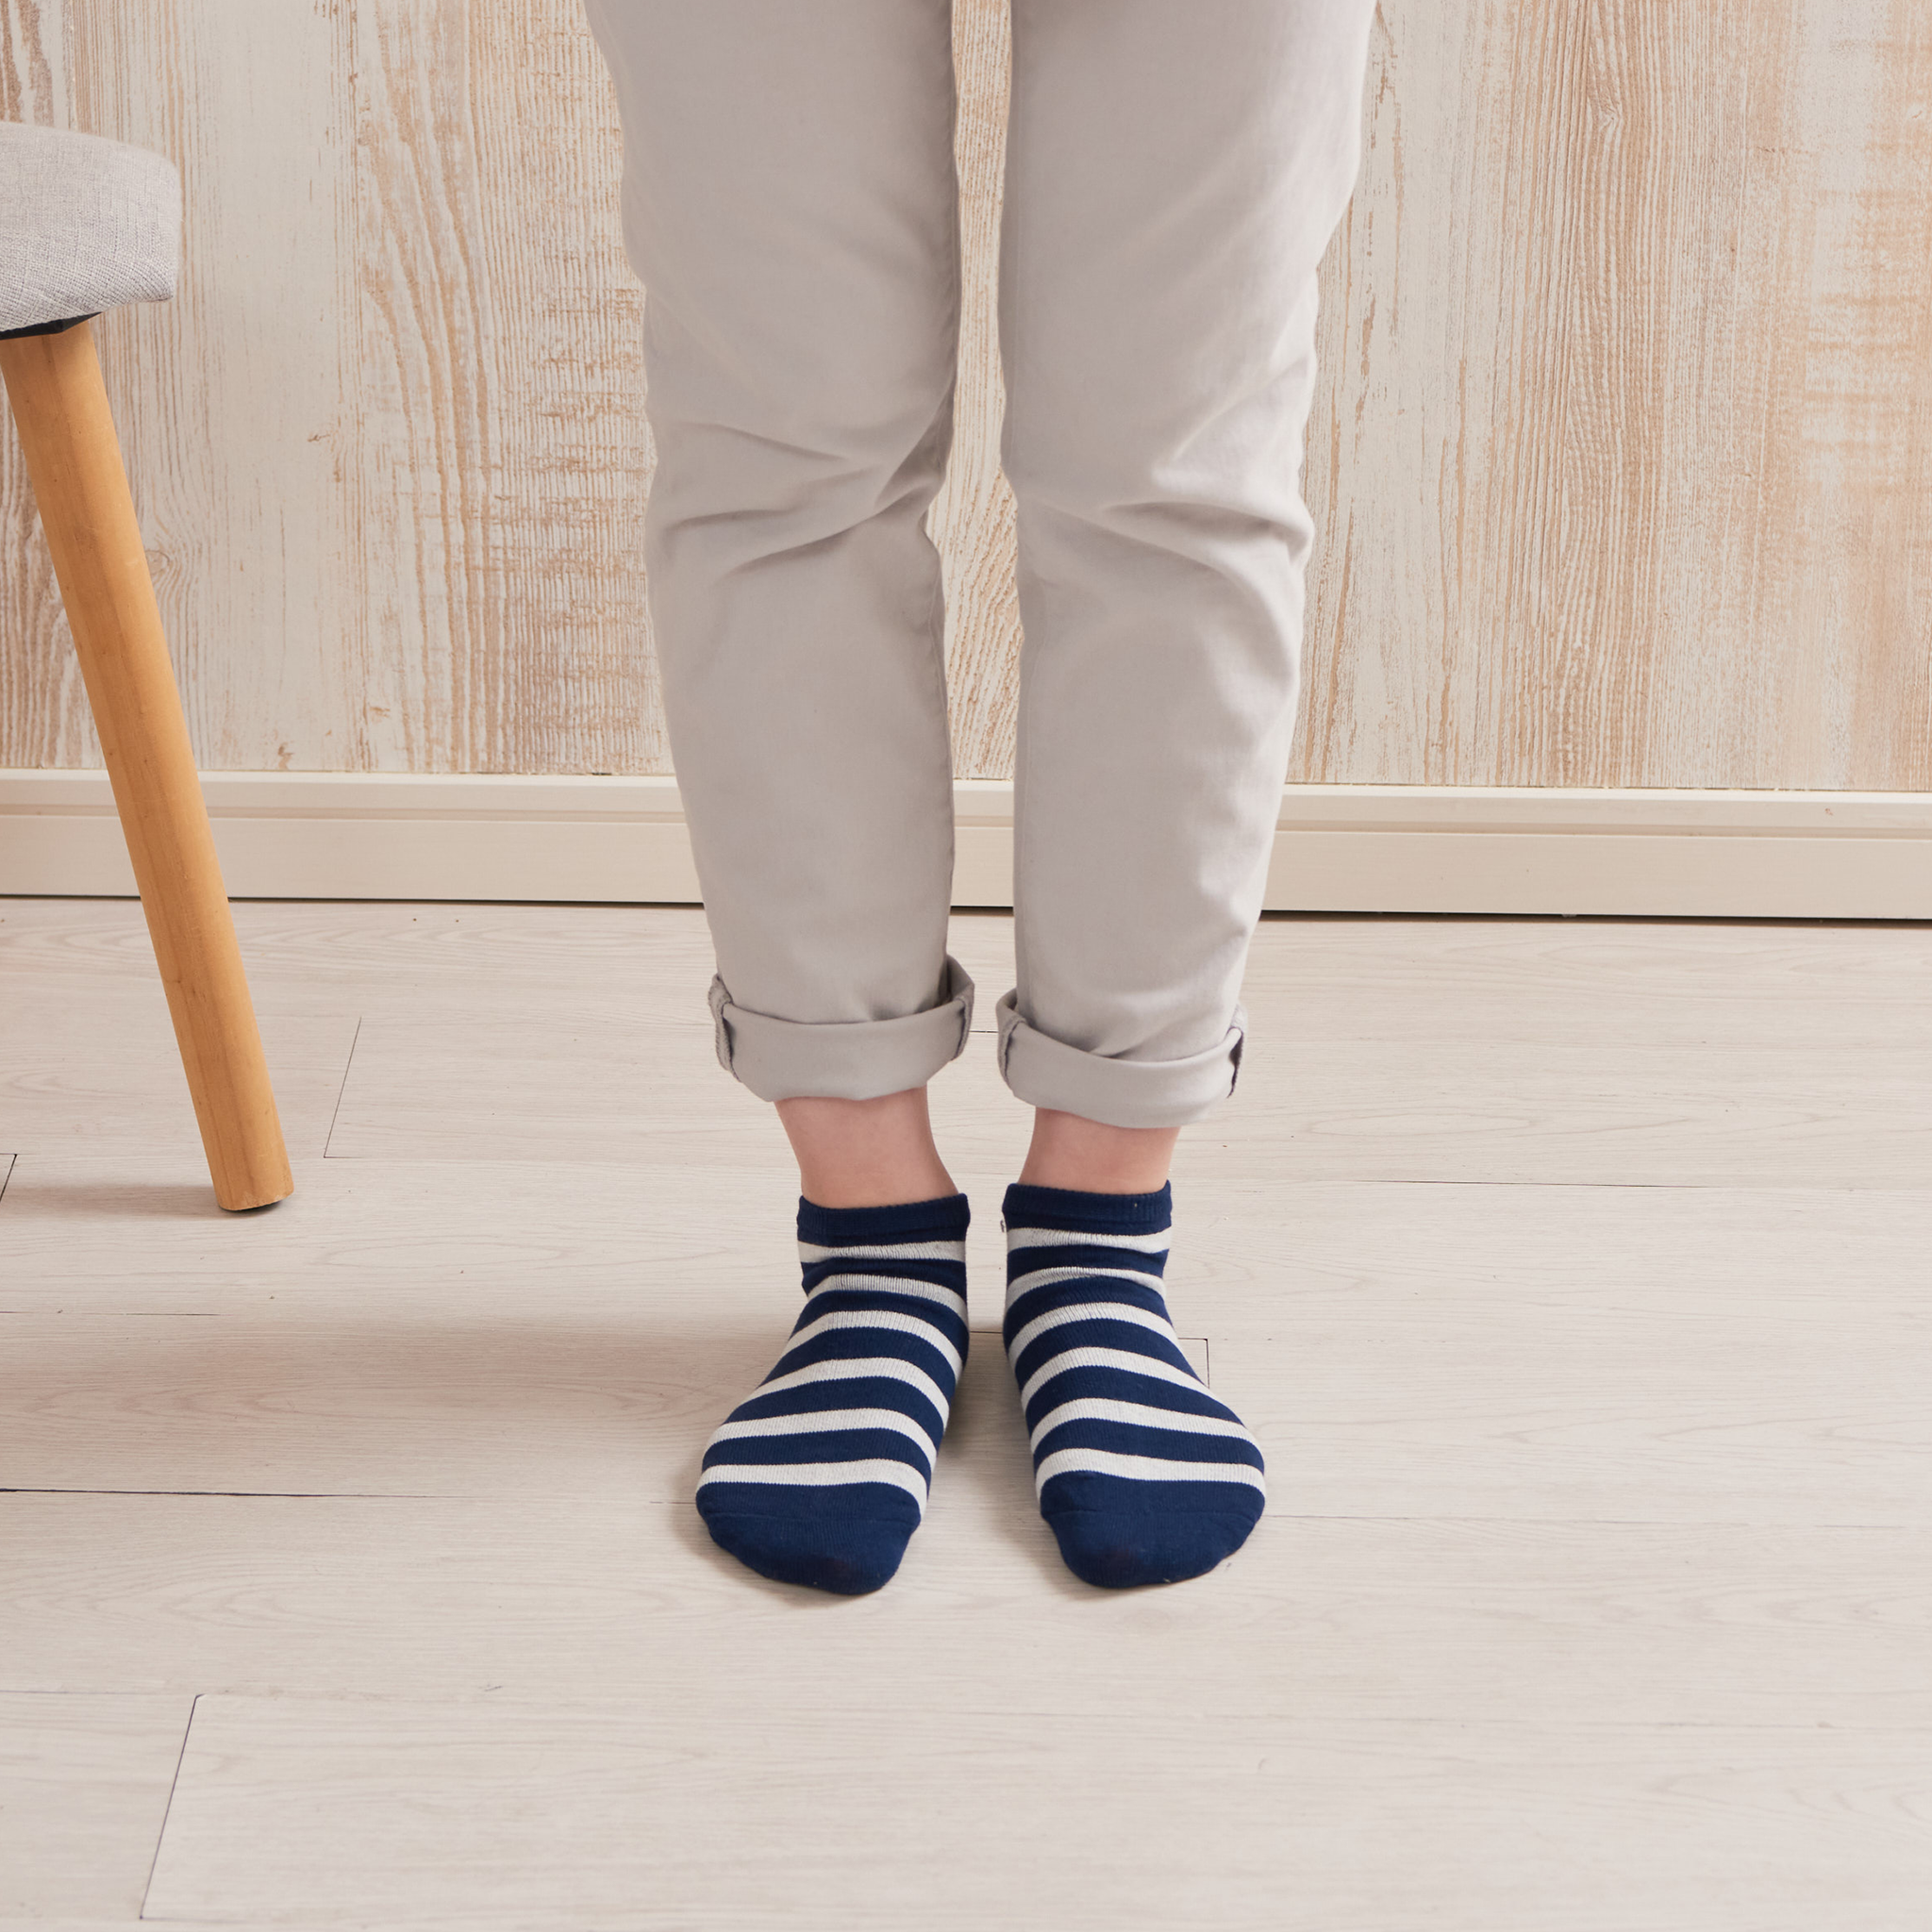 腳跟平滑襪 - 條紋單層棉混紡 - 594